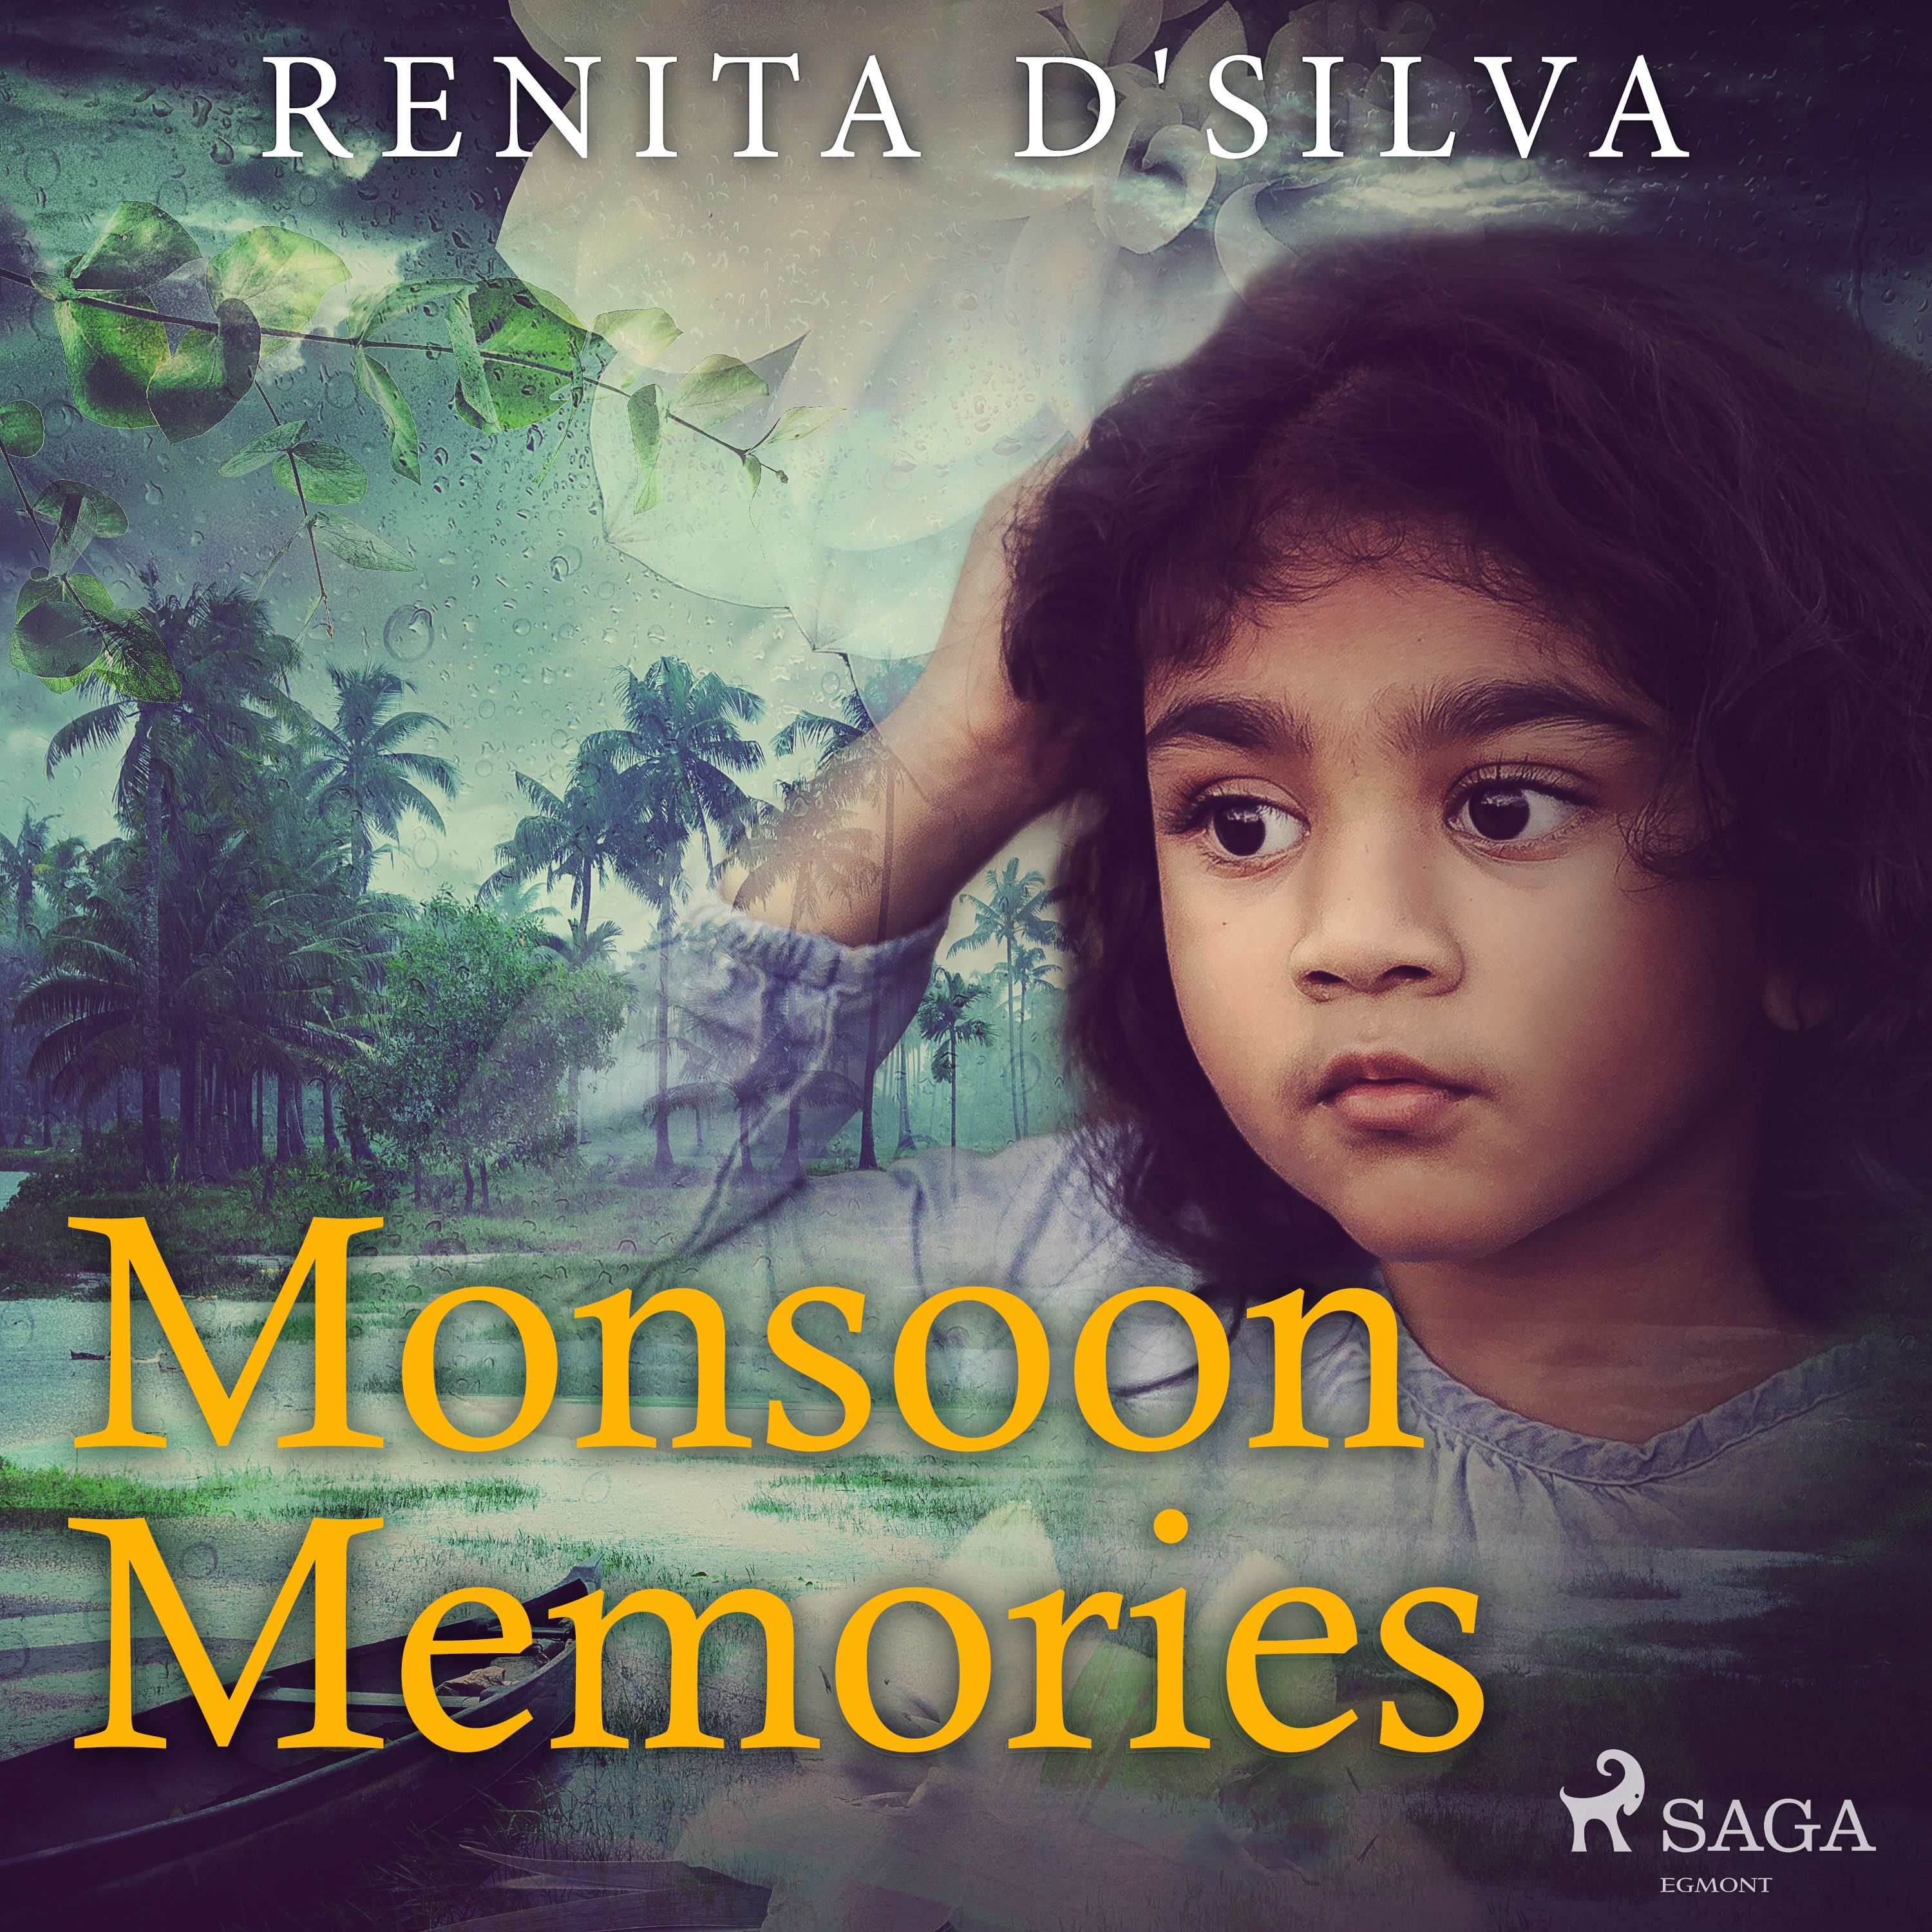 Monsoon Memories, ljudbok av Renita D'Silva